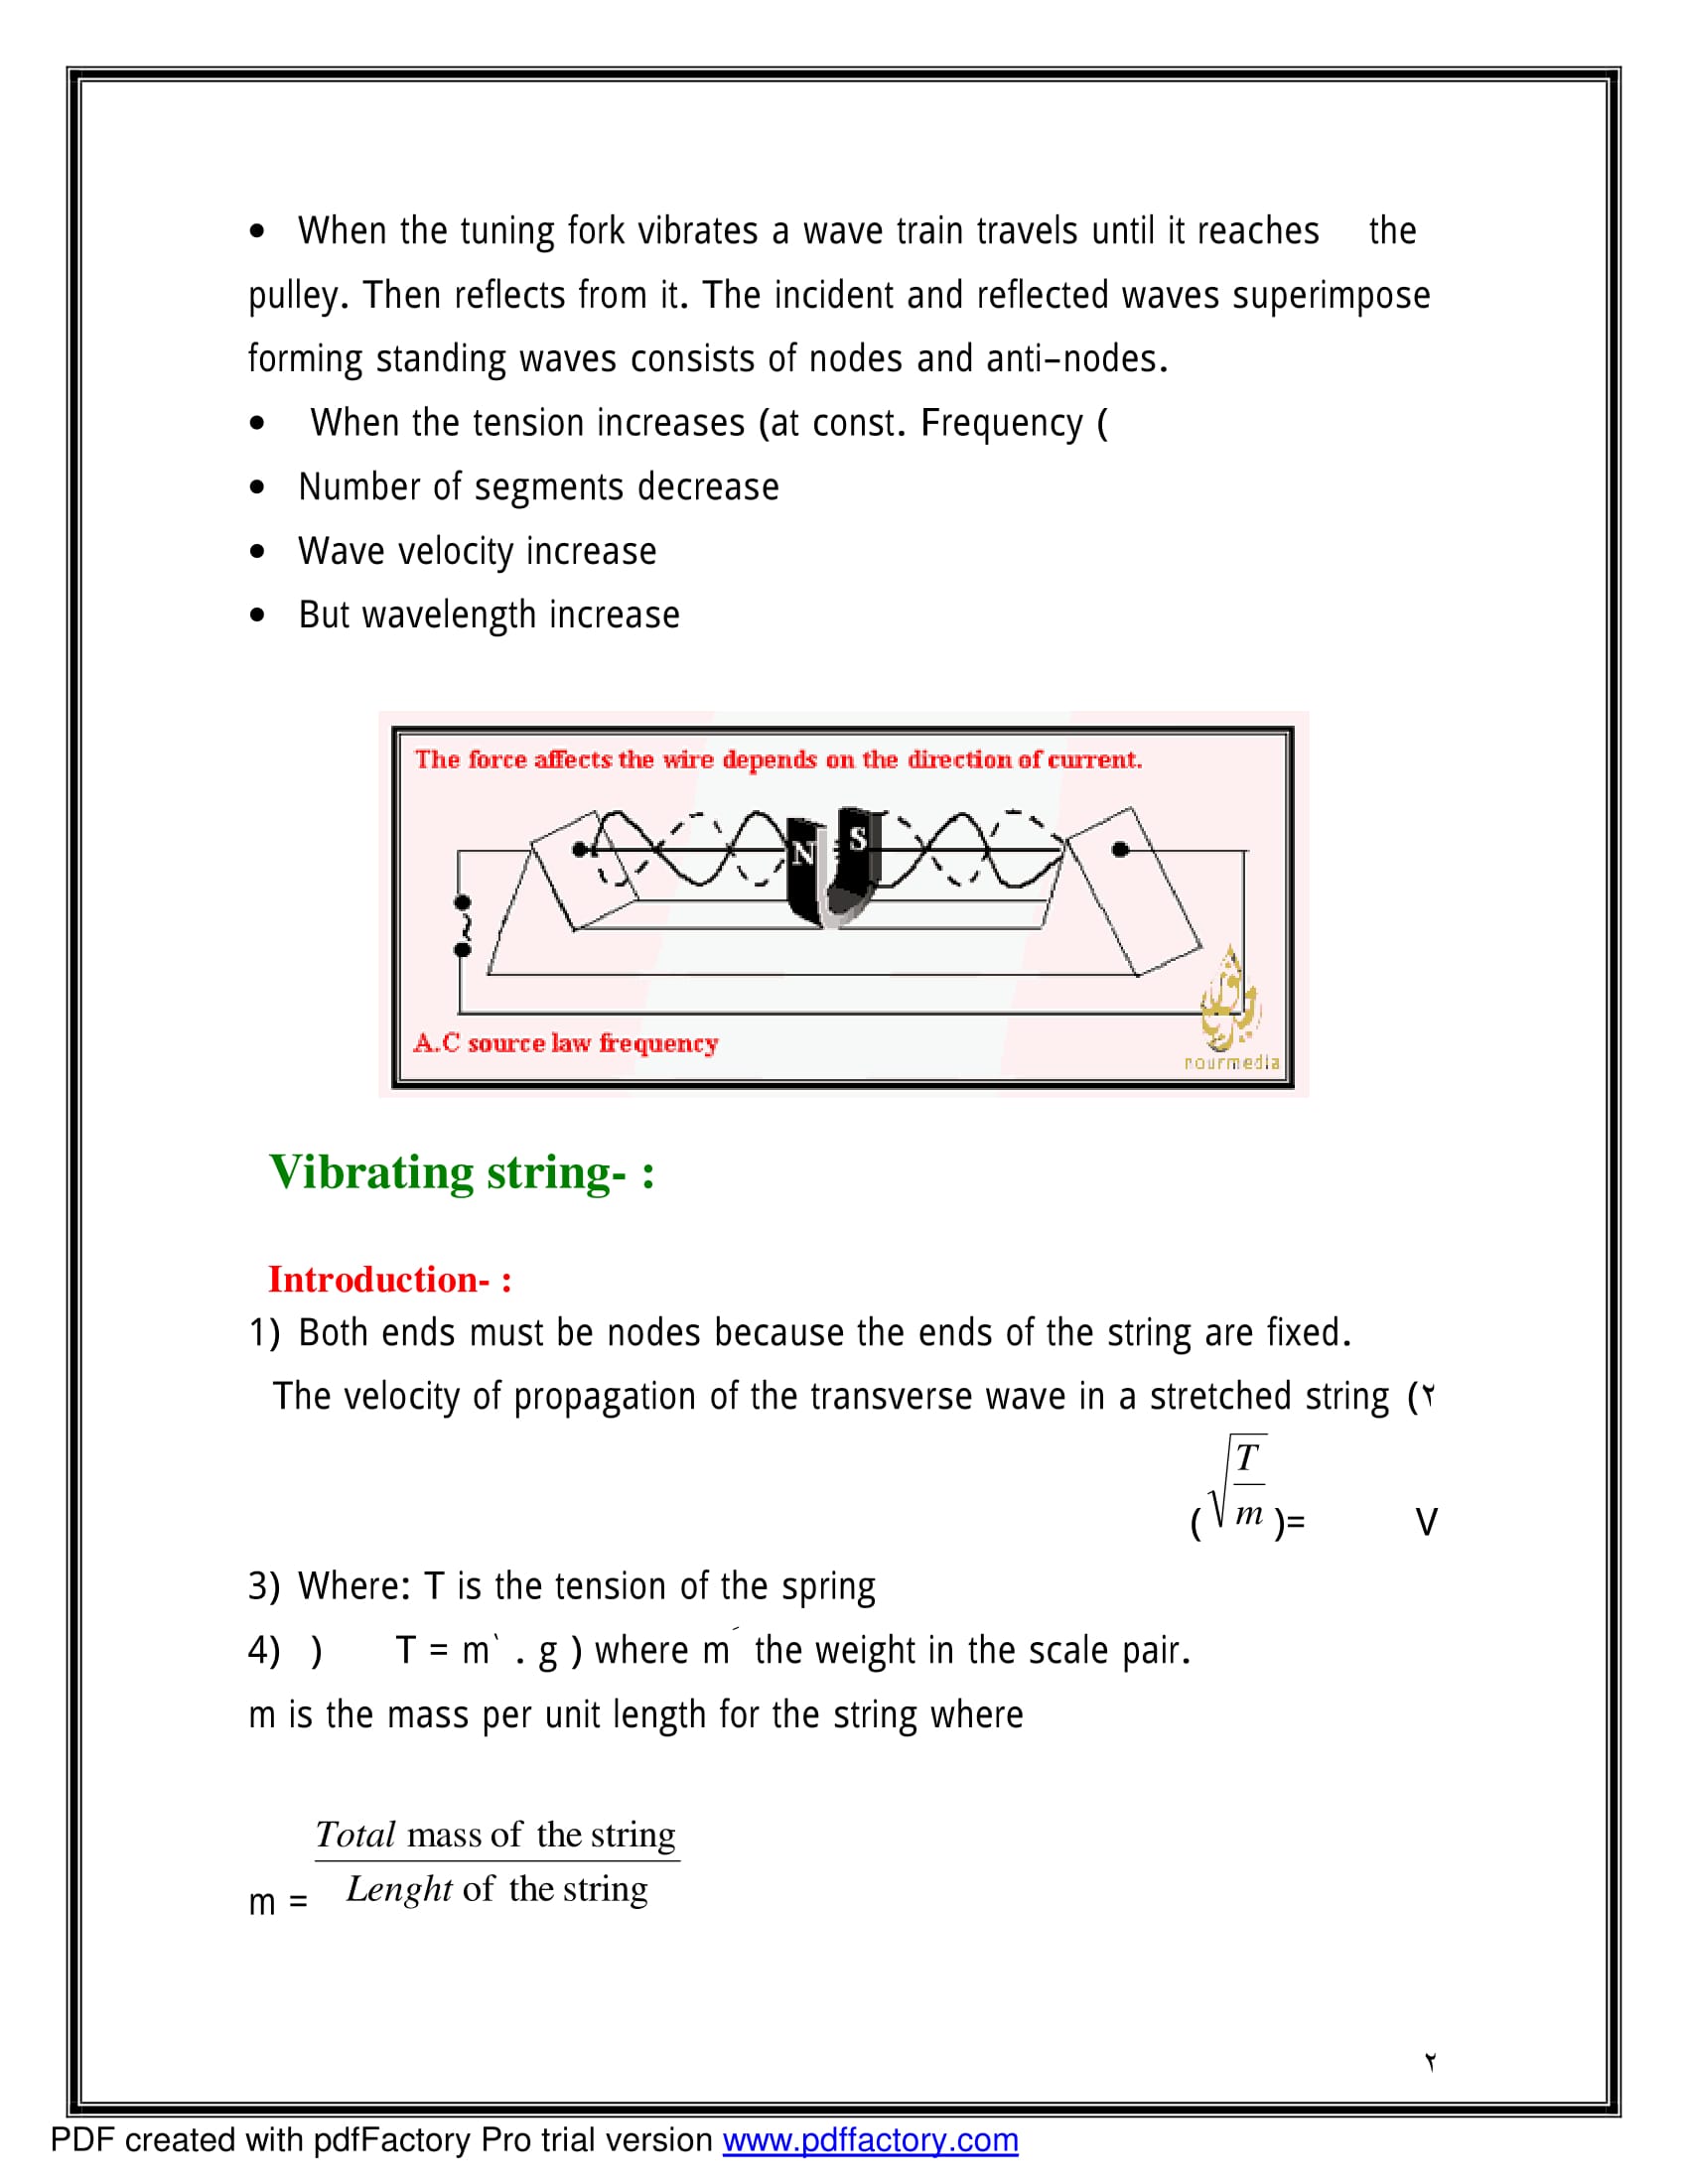 شرح كامل لدرس stationary waves فى Physics للصف الثالث الثانوى اللغات